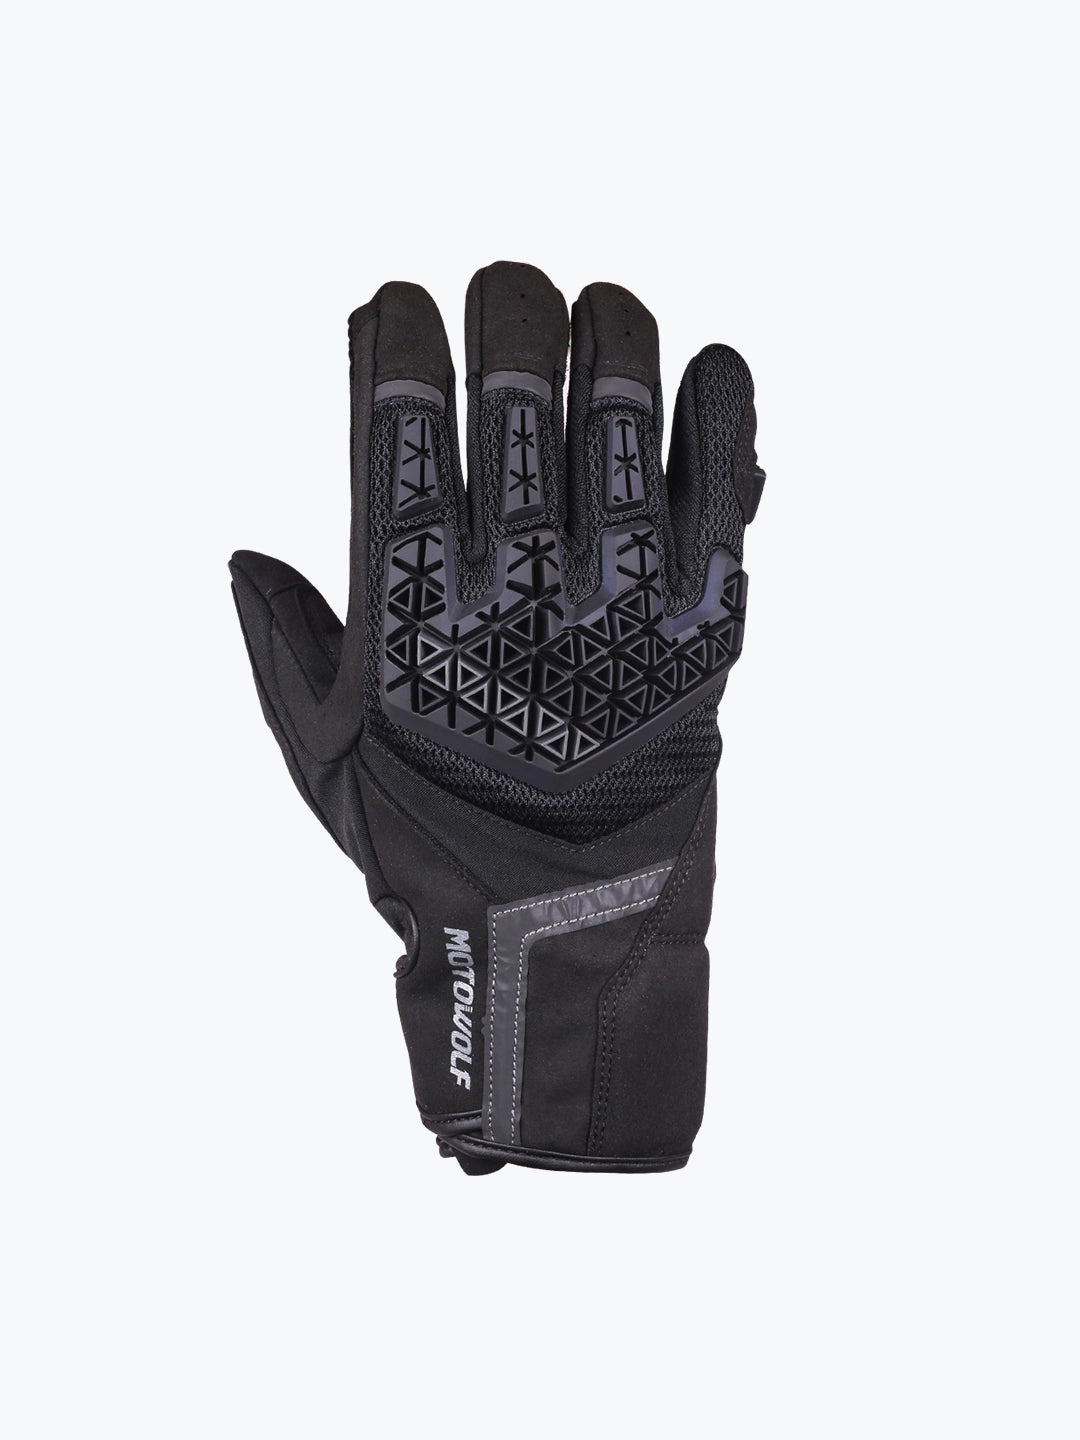 Motowolf Gloves Black 0338